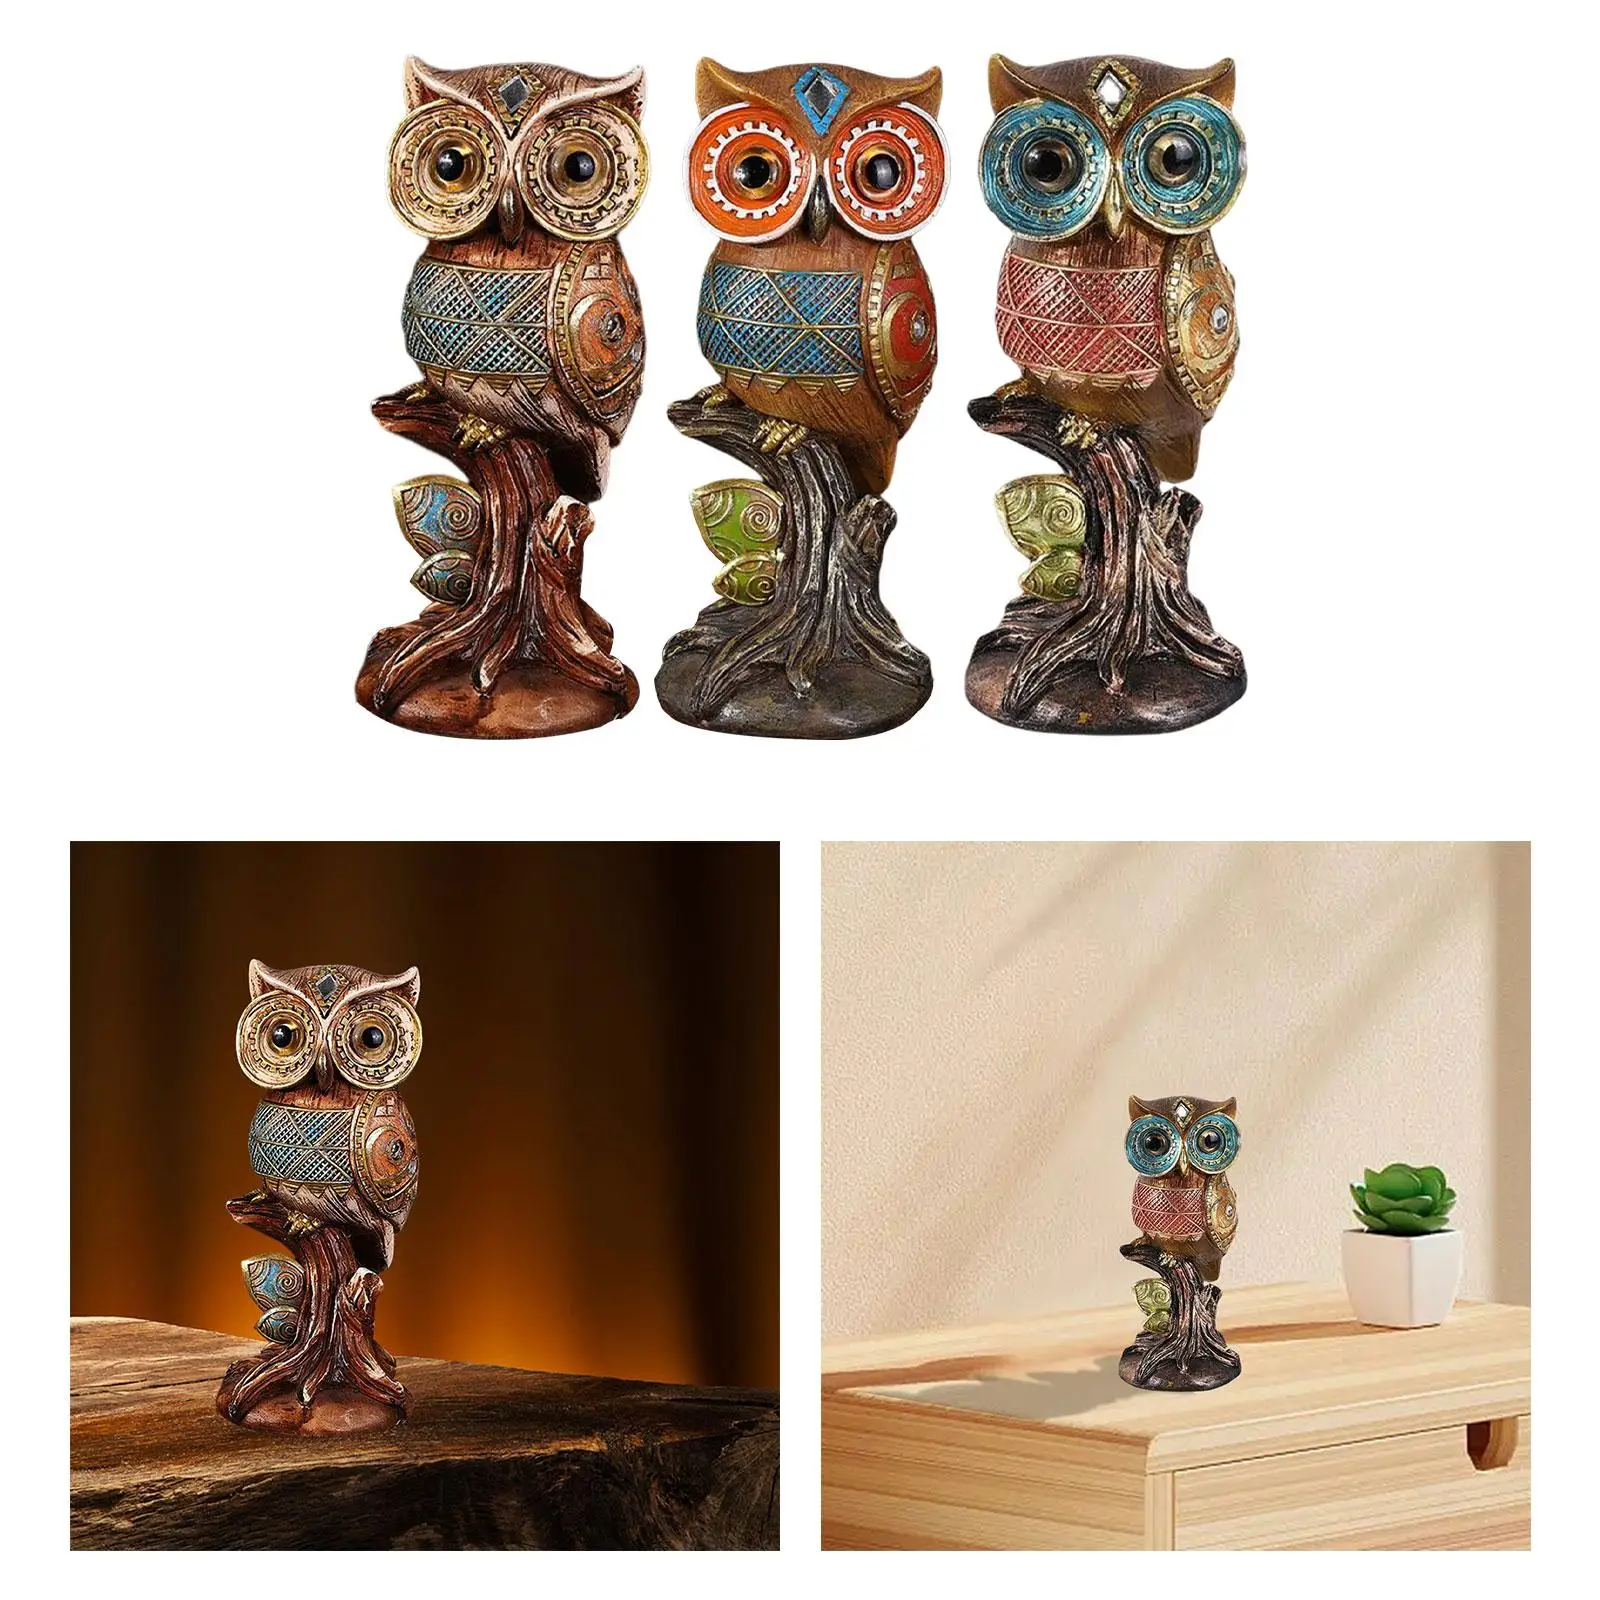 Creative Resin Owl Statues Garden Sculptures Collectibles Figure Decor Birds